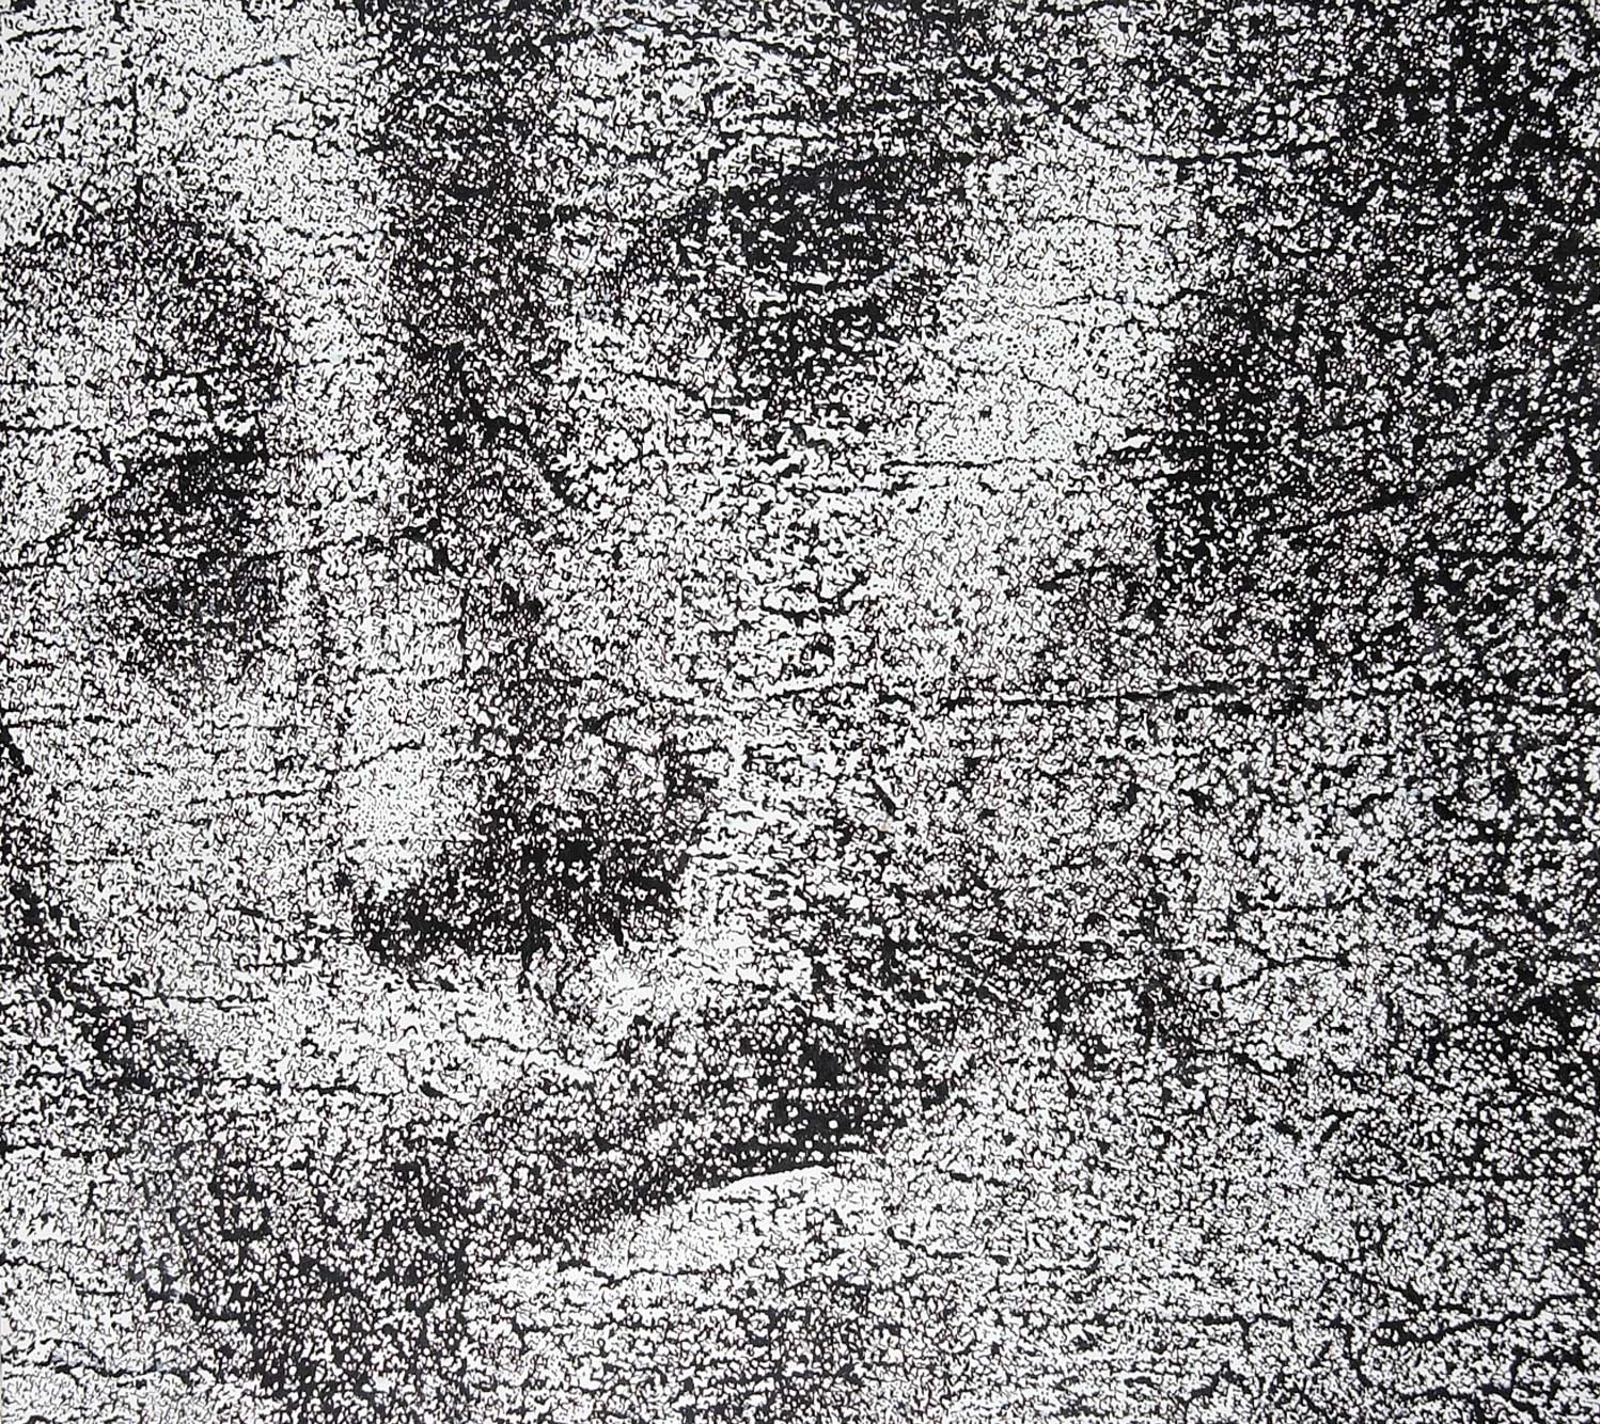 Kristin Saunders - Face of Jesus